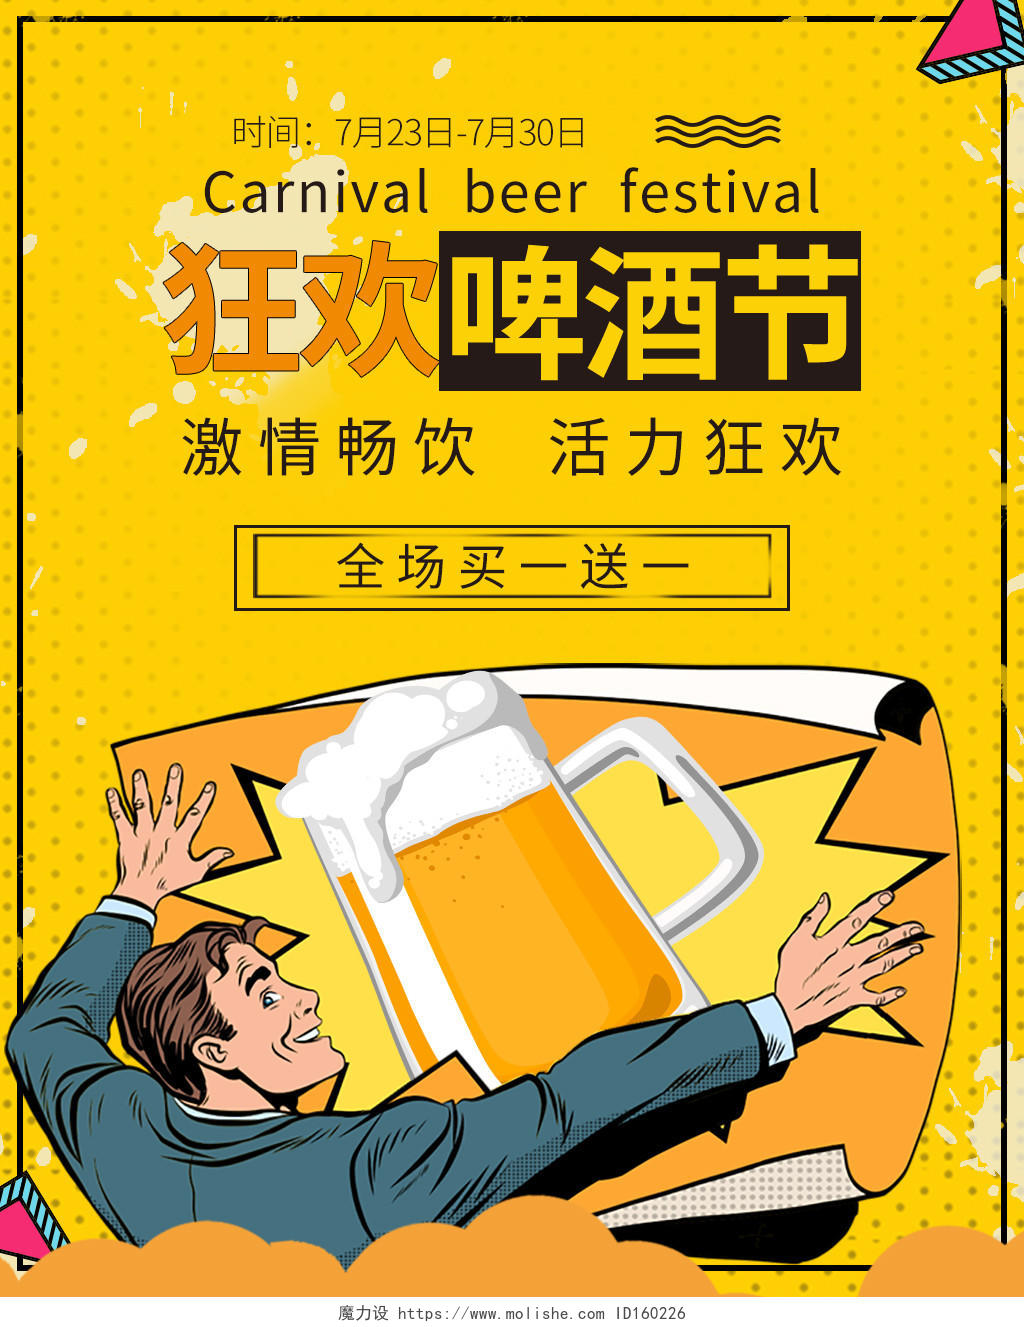 黄色背景狂欢啤酒节激情畅饮海报